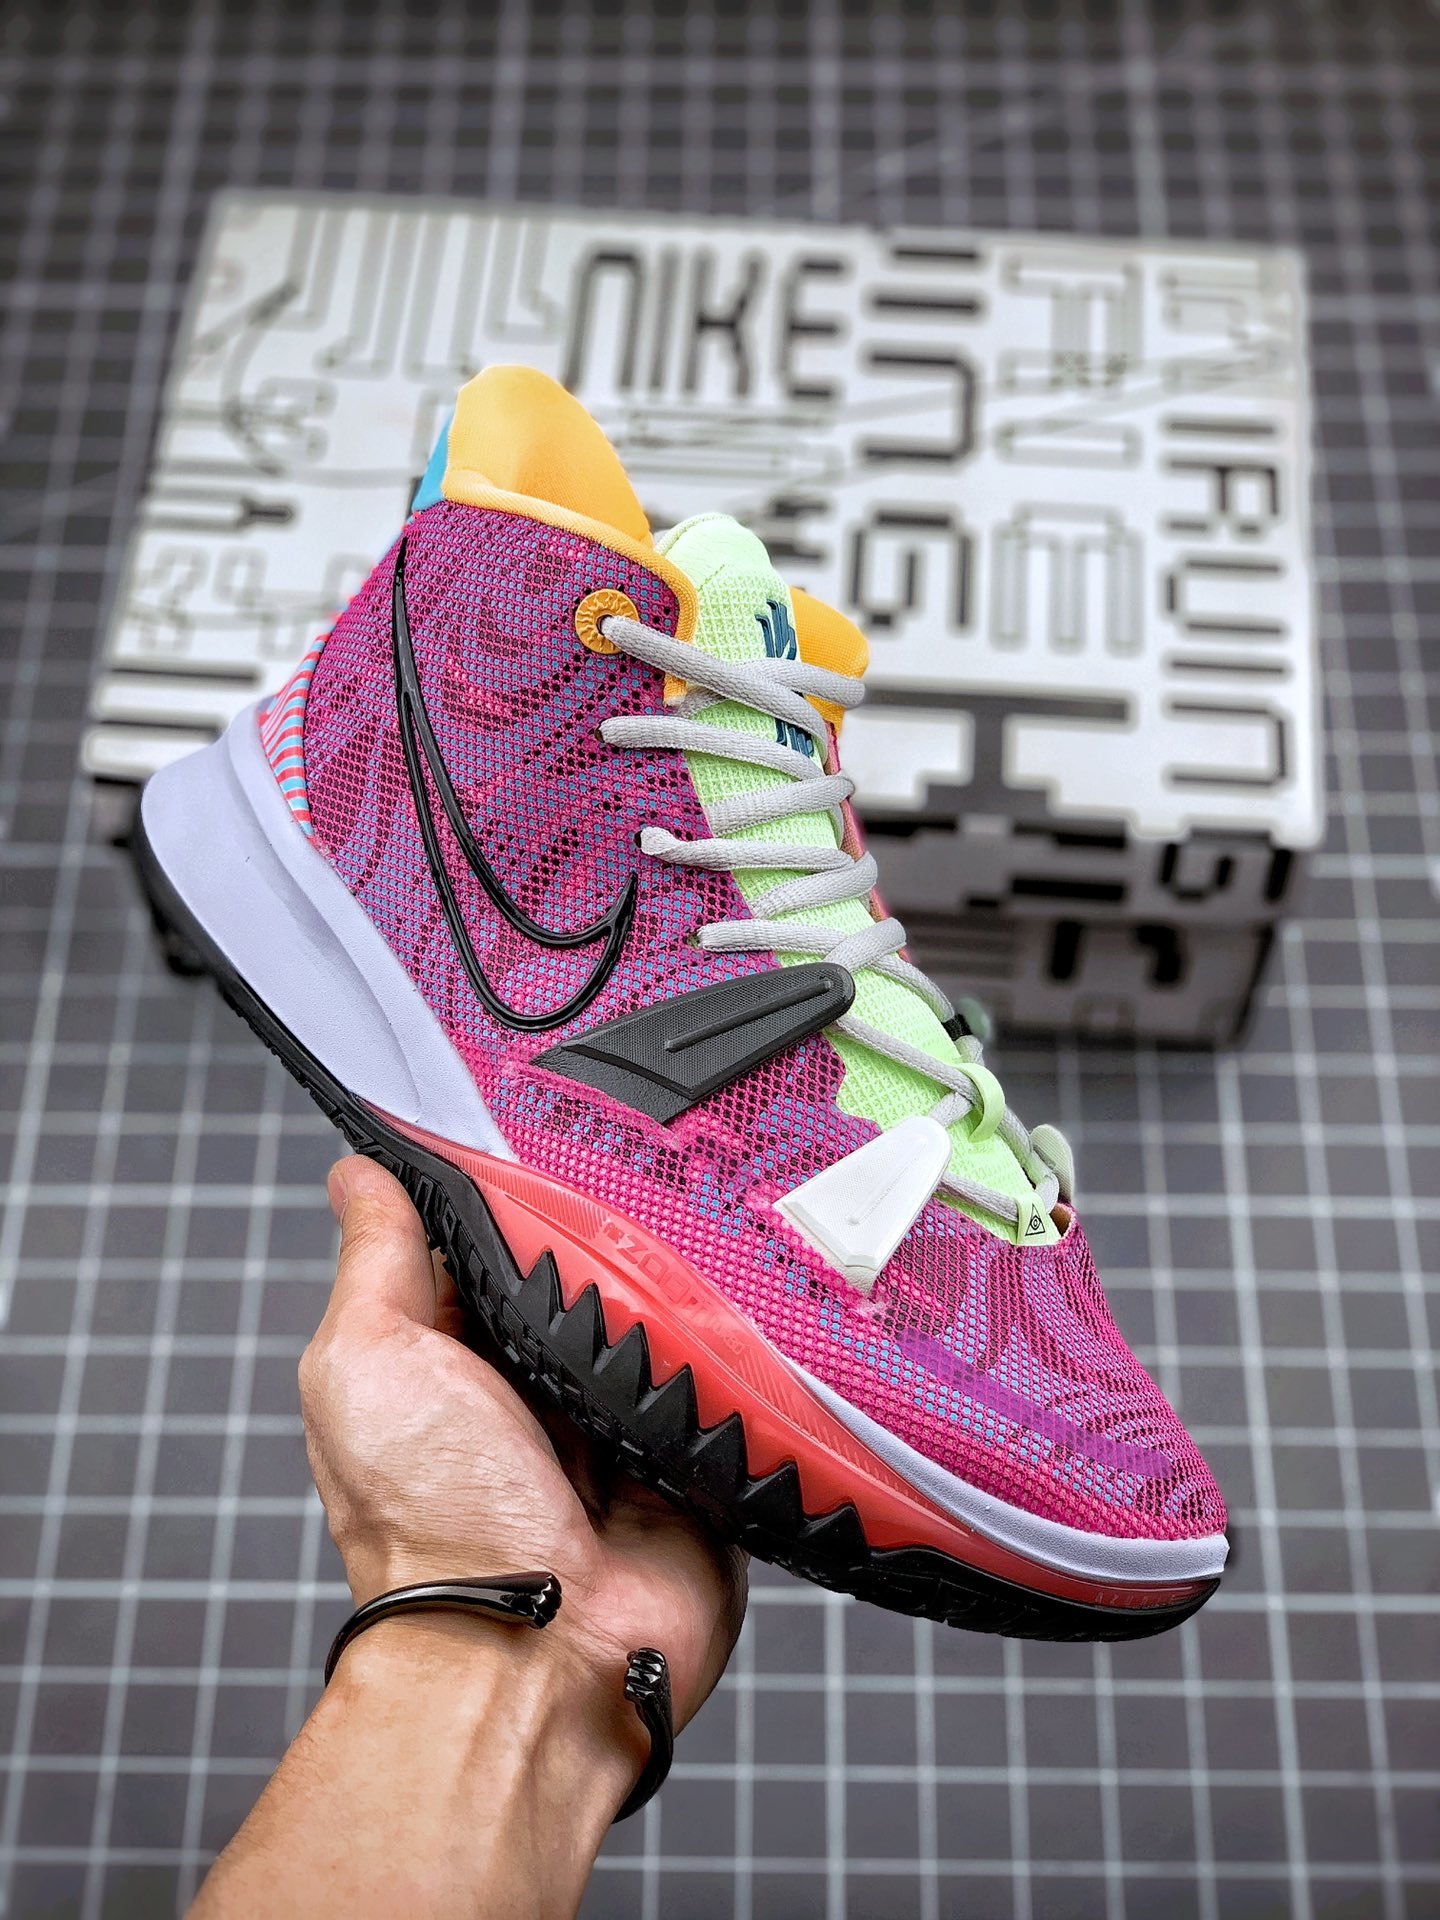 Nike Kyrie 7 "Hendrix" Shoes